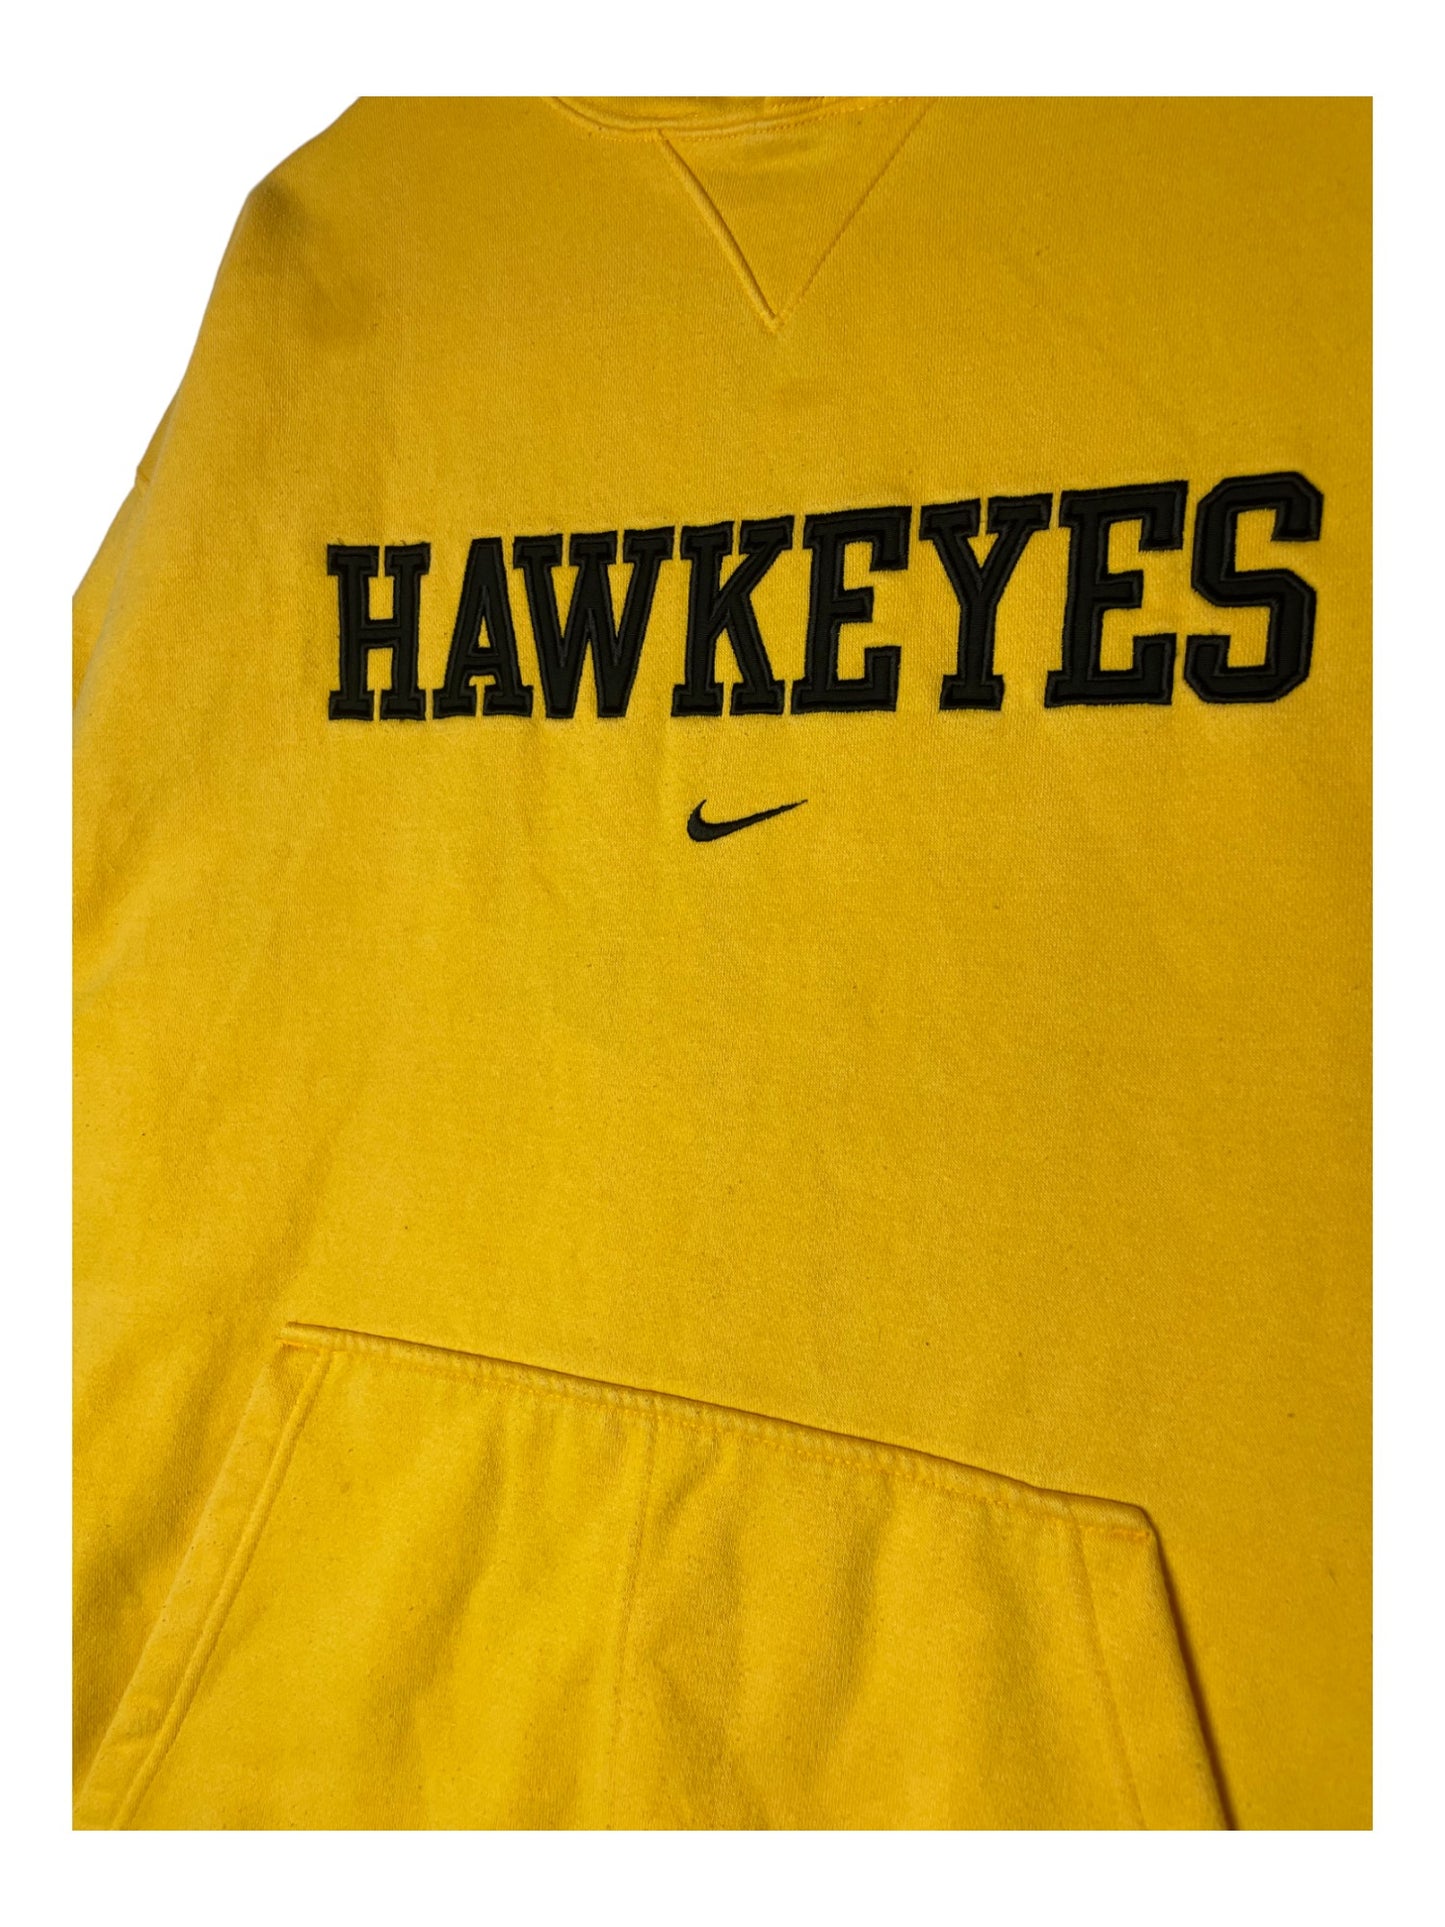 Hoodie Hawkeyes Nike